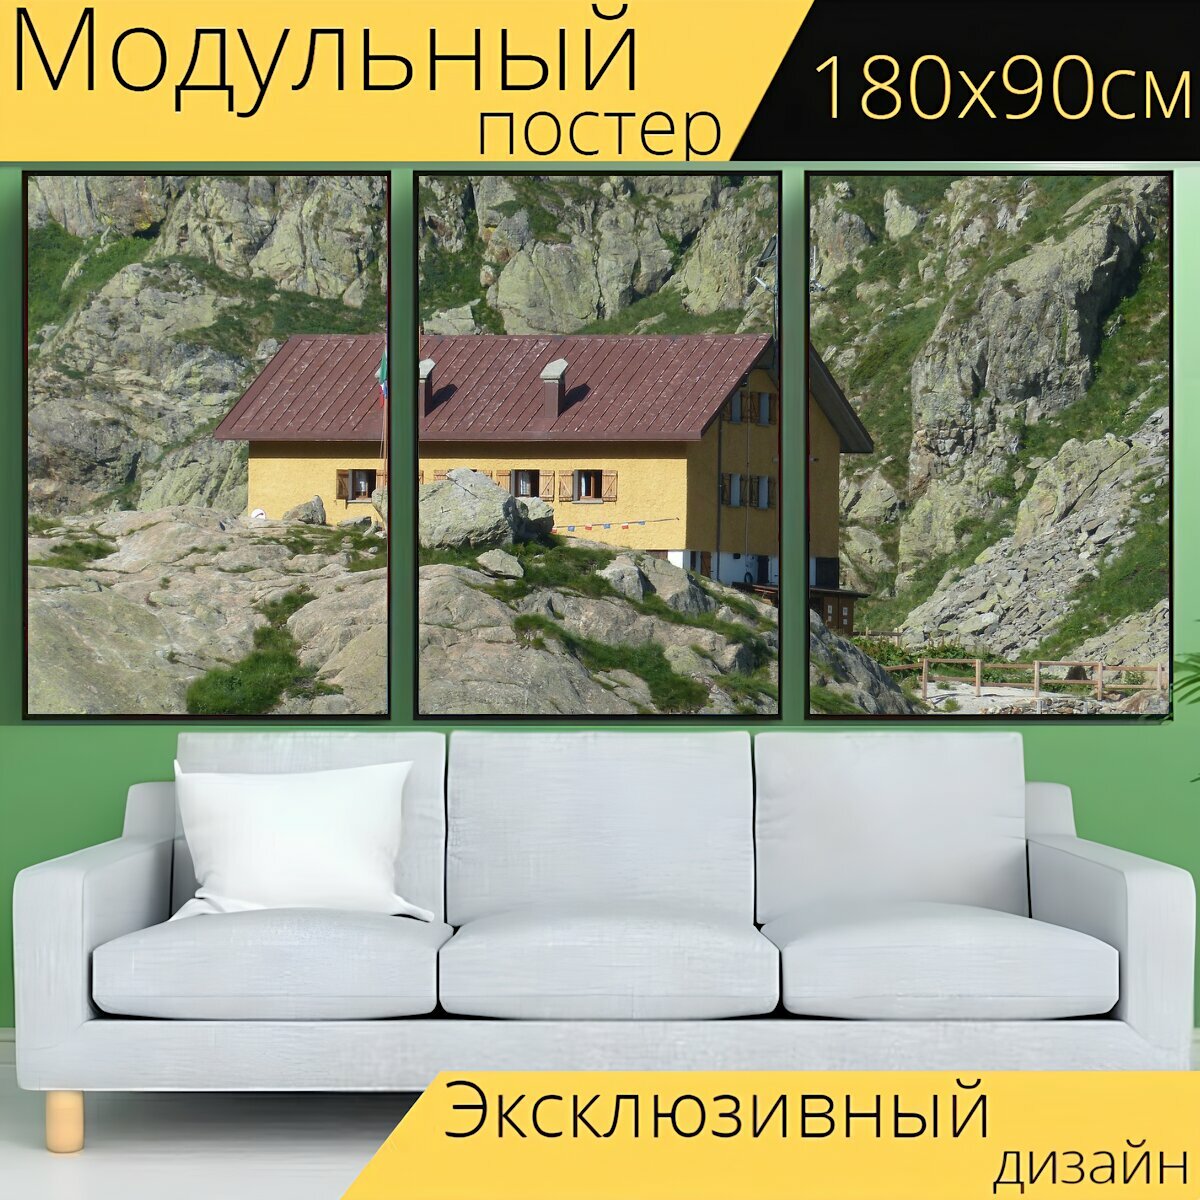 Модульный постер "Дом, хижина, горная хижина" 180 x 90 см. для интерьера